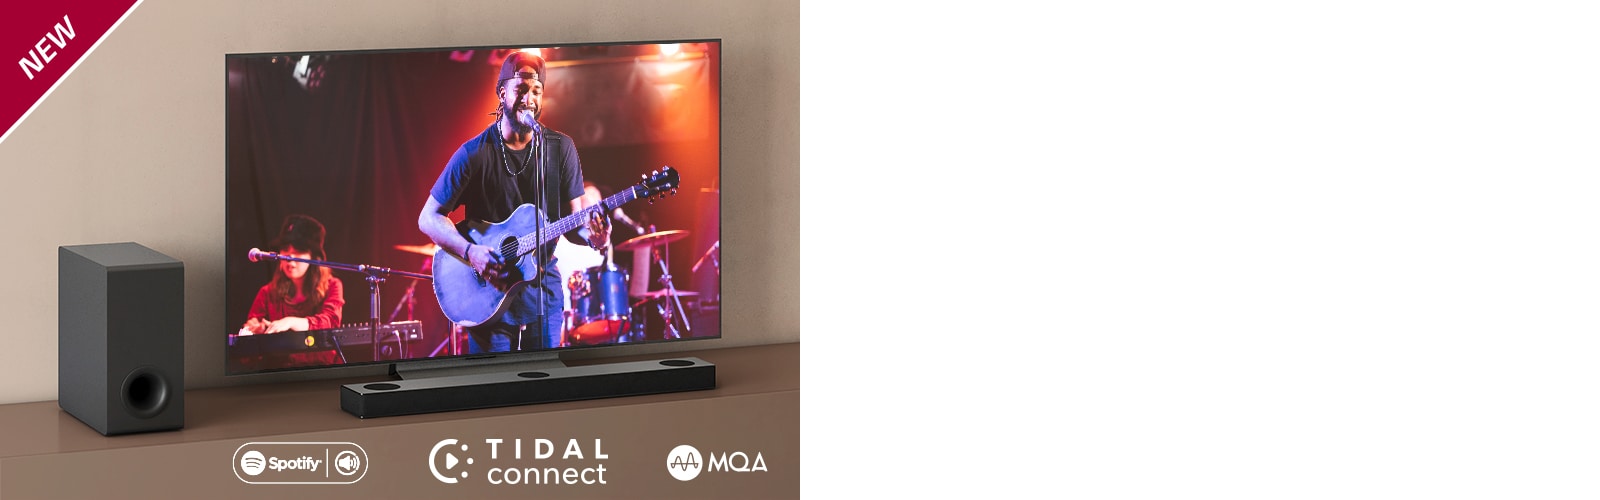 LG TV ir novietots uz brūna plaukta, LG Sound Bar S80QY ir novietota televizora priekšā. Zemo frekvenču pastiprinātājs ir novietots televizora kreisajā pusē. TV ekrānā redzama koncerta aina. Atzīme “Jaunums” ir redzama augšējā kreisajā stūrī.